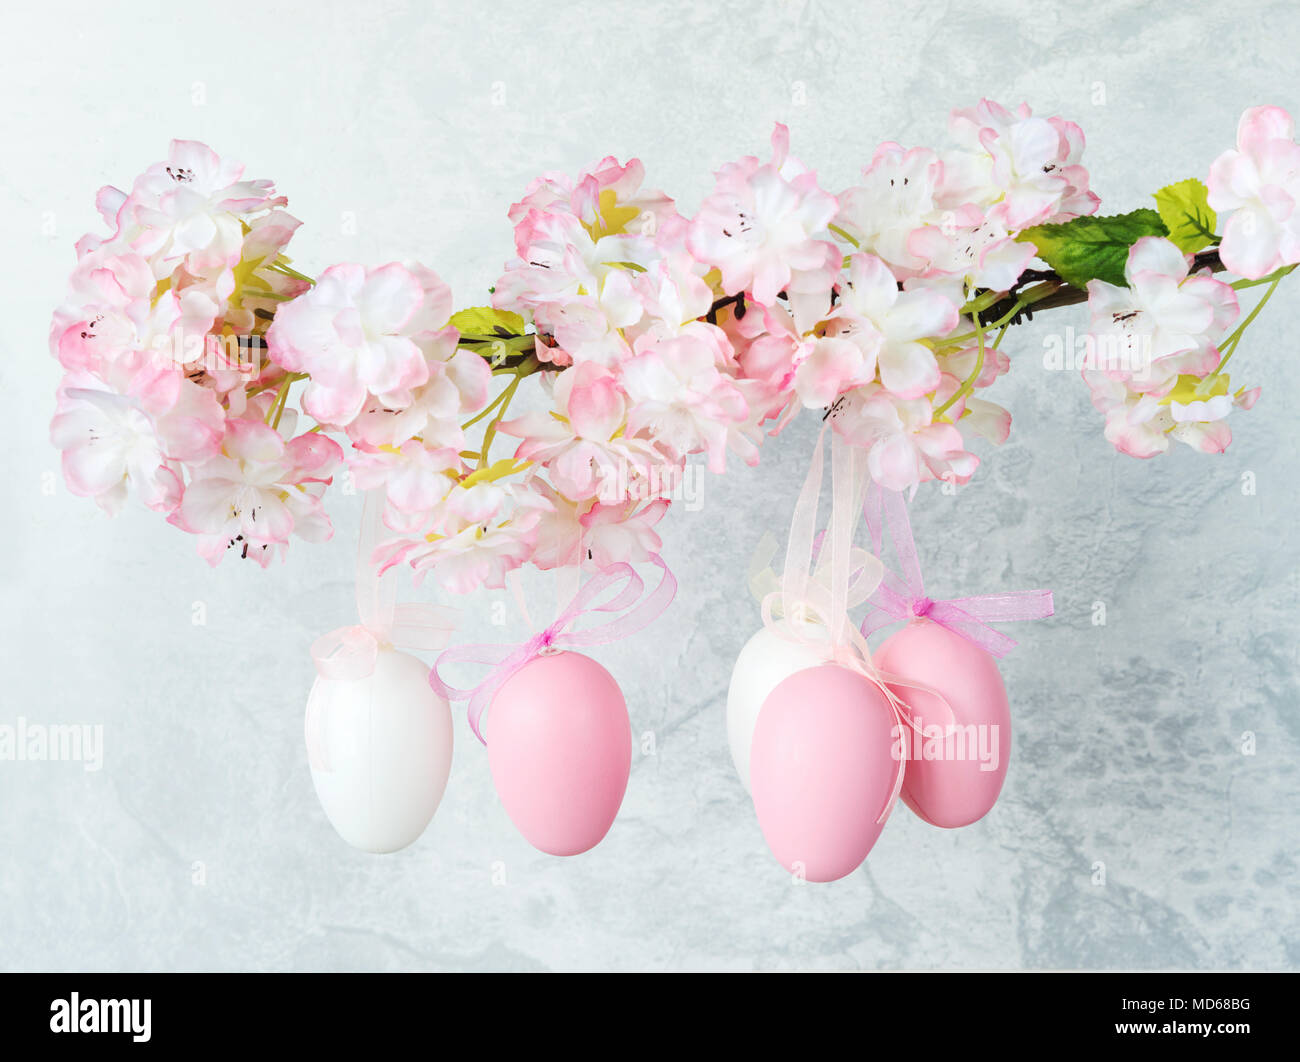 Les oeufs de Pâques blanc et rose, décorée avec des arcs, s'accrocher sur une branche de pommier à fleurs contre un mur de pierre grise Banque D'Images